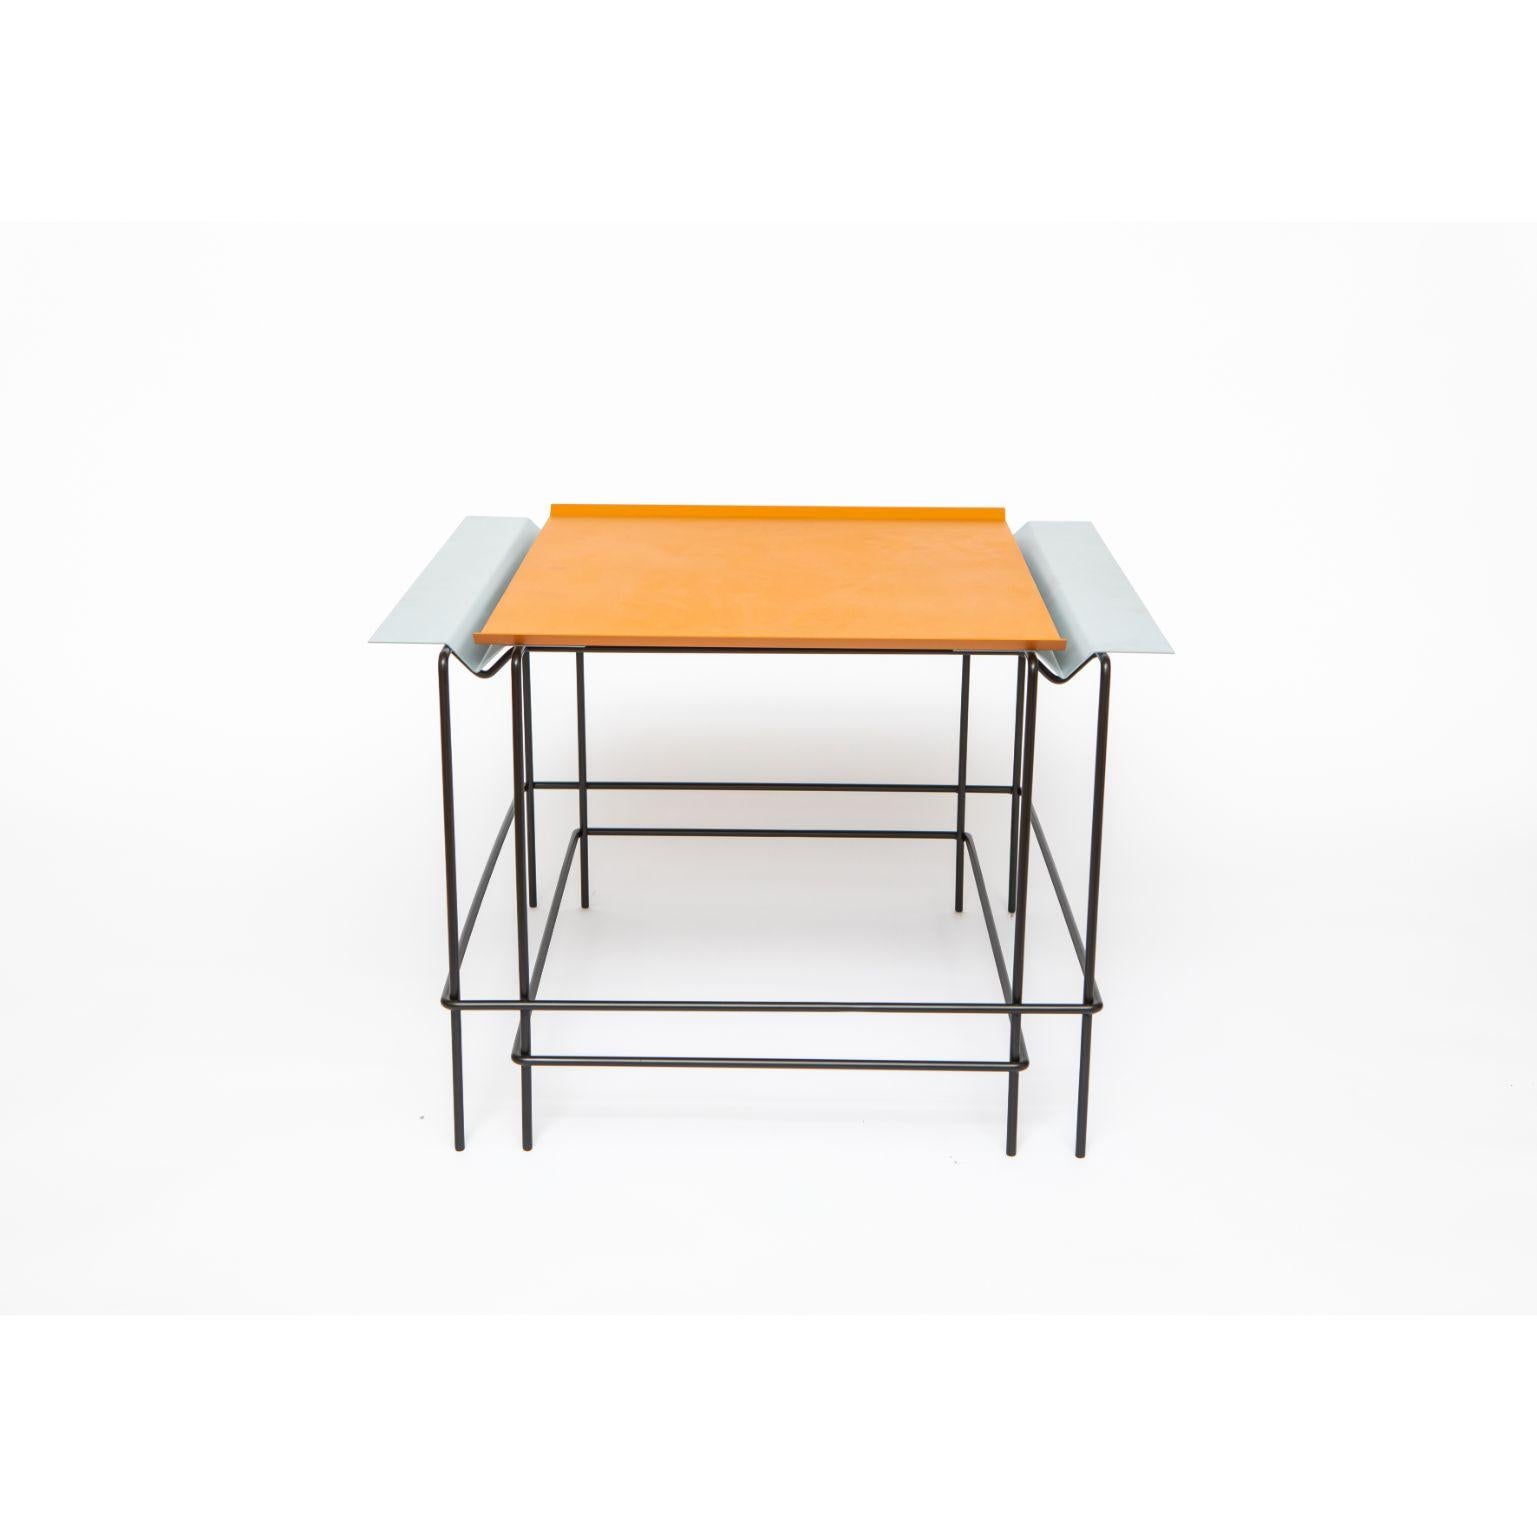 Leva 40 - Tisch von Alva Design
MATERIALIEN: Lackiertes Metall, rostfreier Stahl
Abmessungen: 60 x 40 x 59 cm

ALVA ist ein Büro für Möbel- und Objektdesign, das von den Schwestern Susana Bastos, Künstlerin und Designerin, und Marcelo Alvarenga,